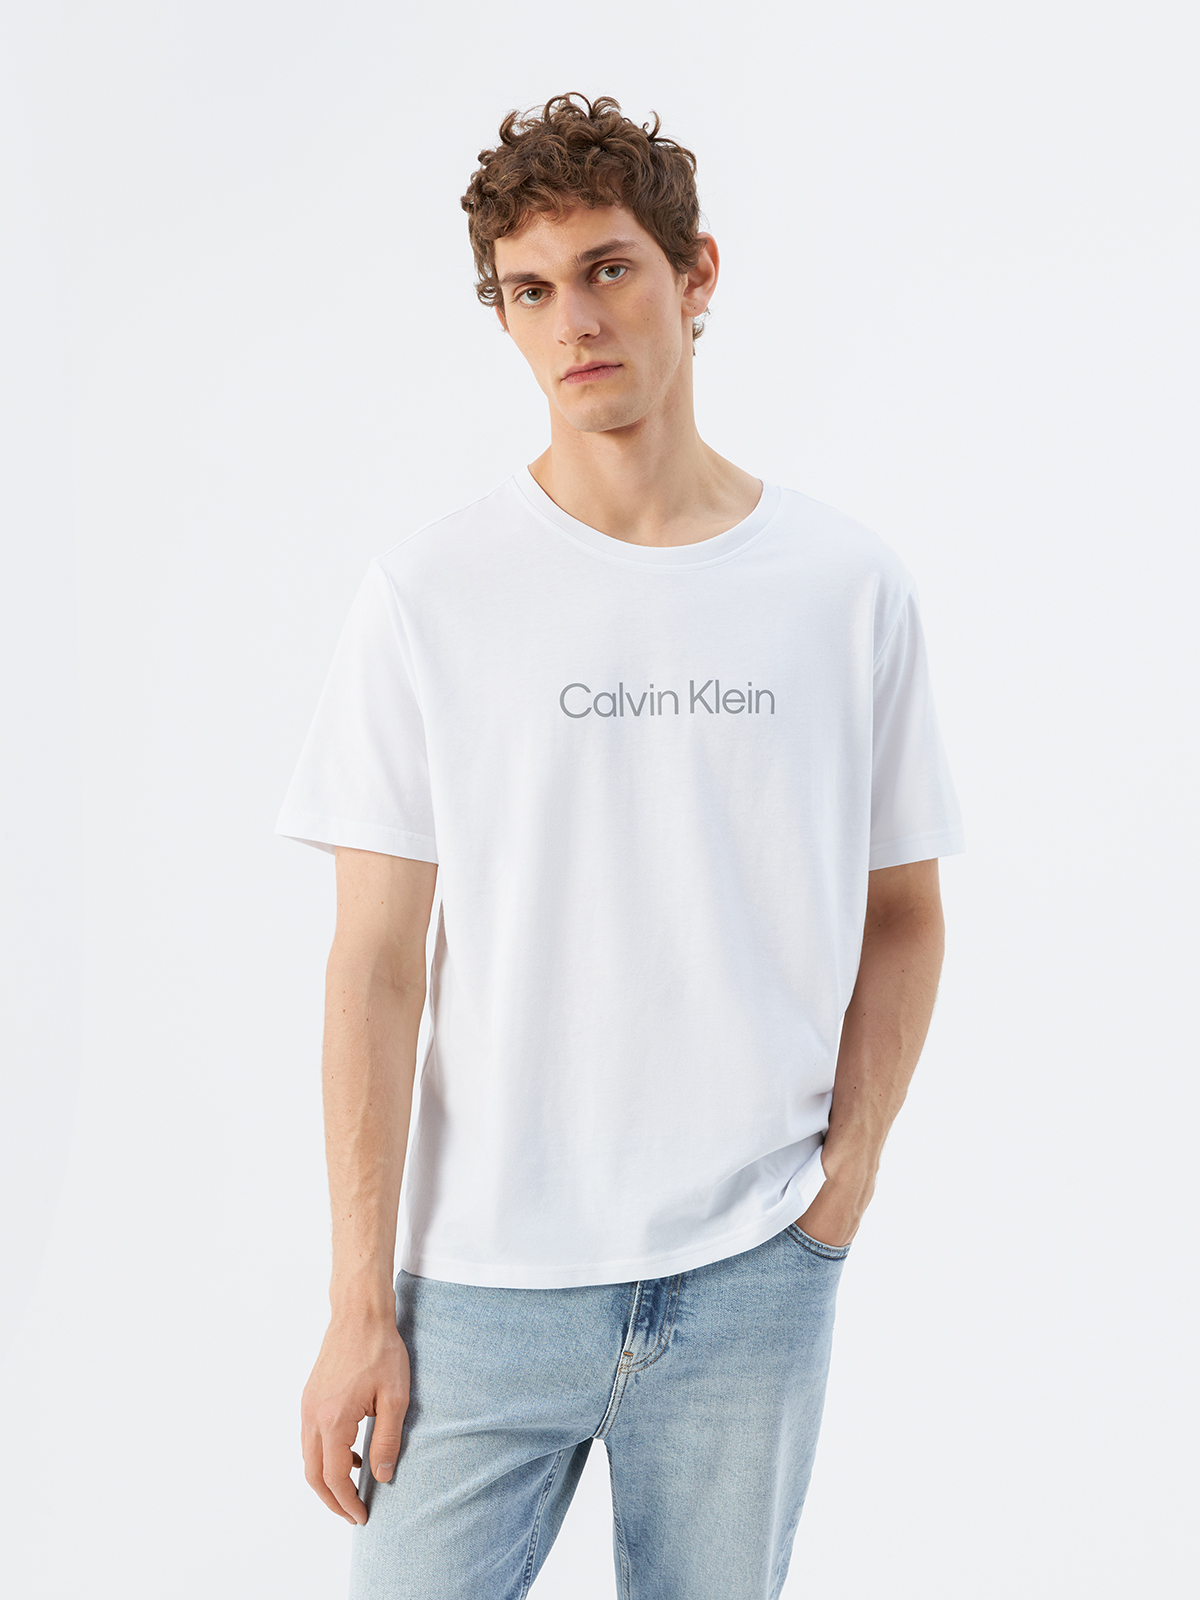 Футболка мужская Calvin Klein 00GMS2K107YAF белая, размер S